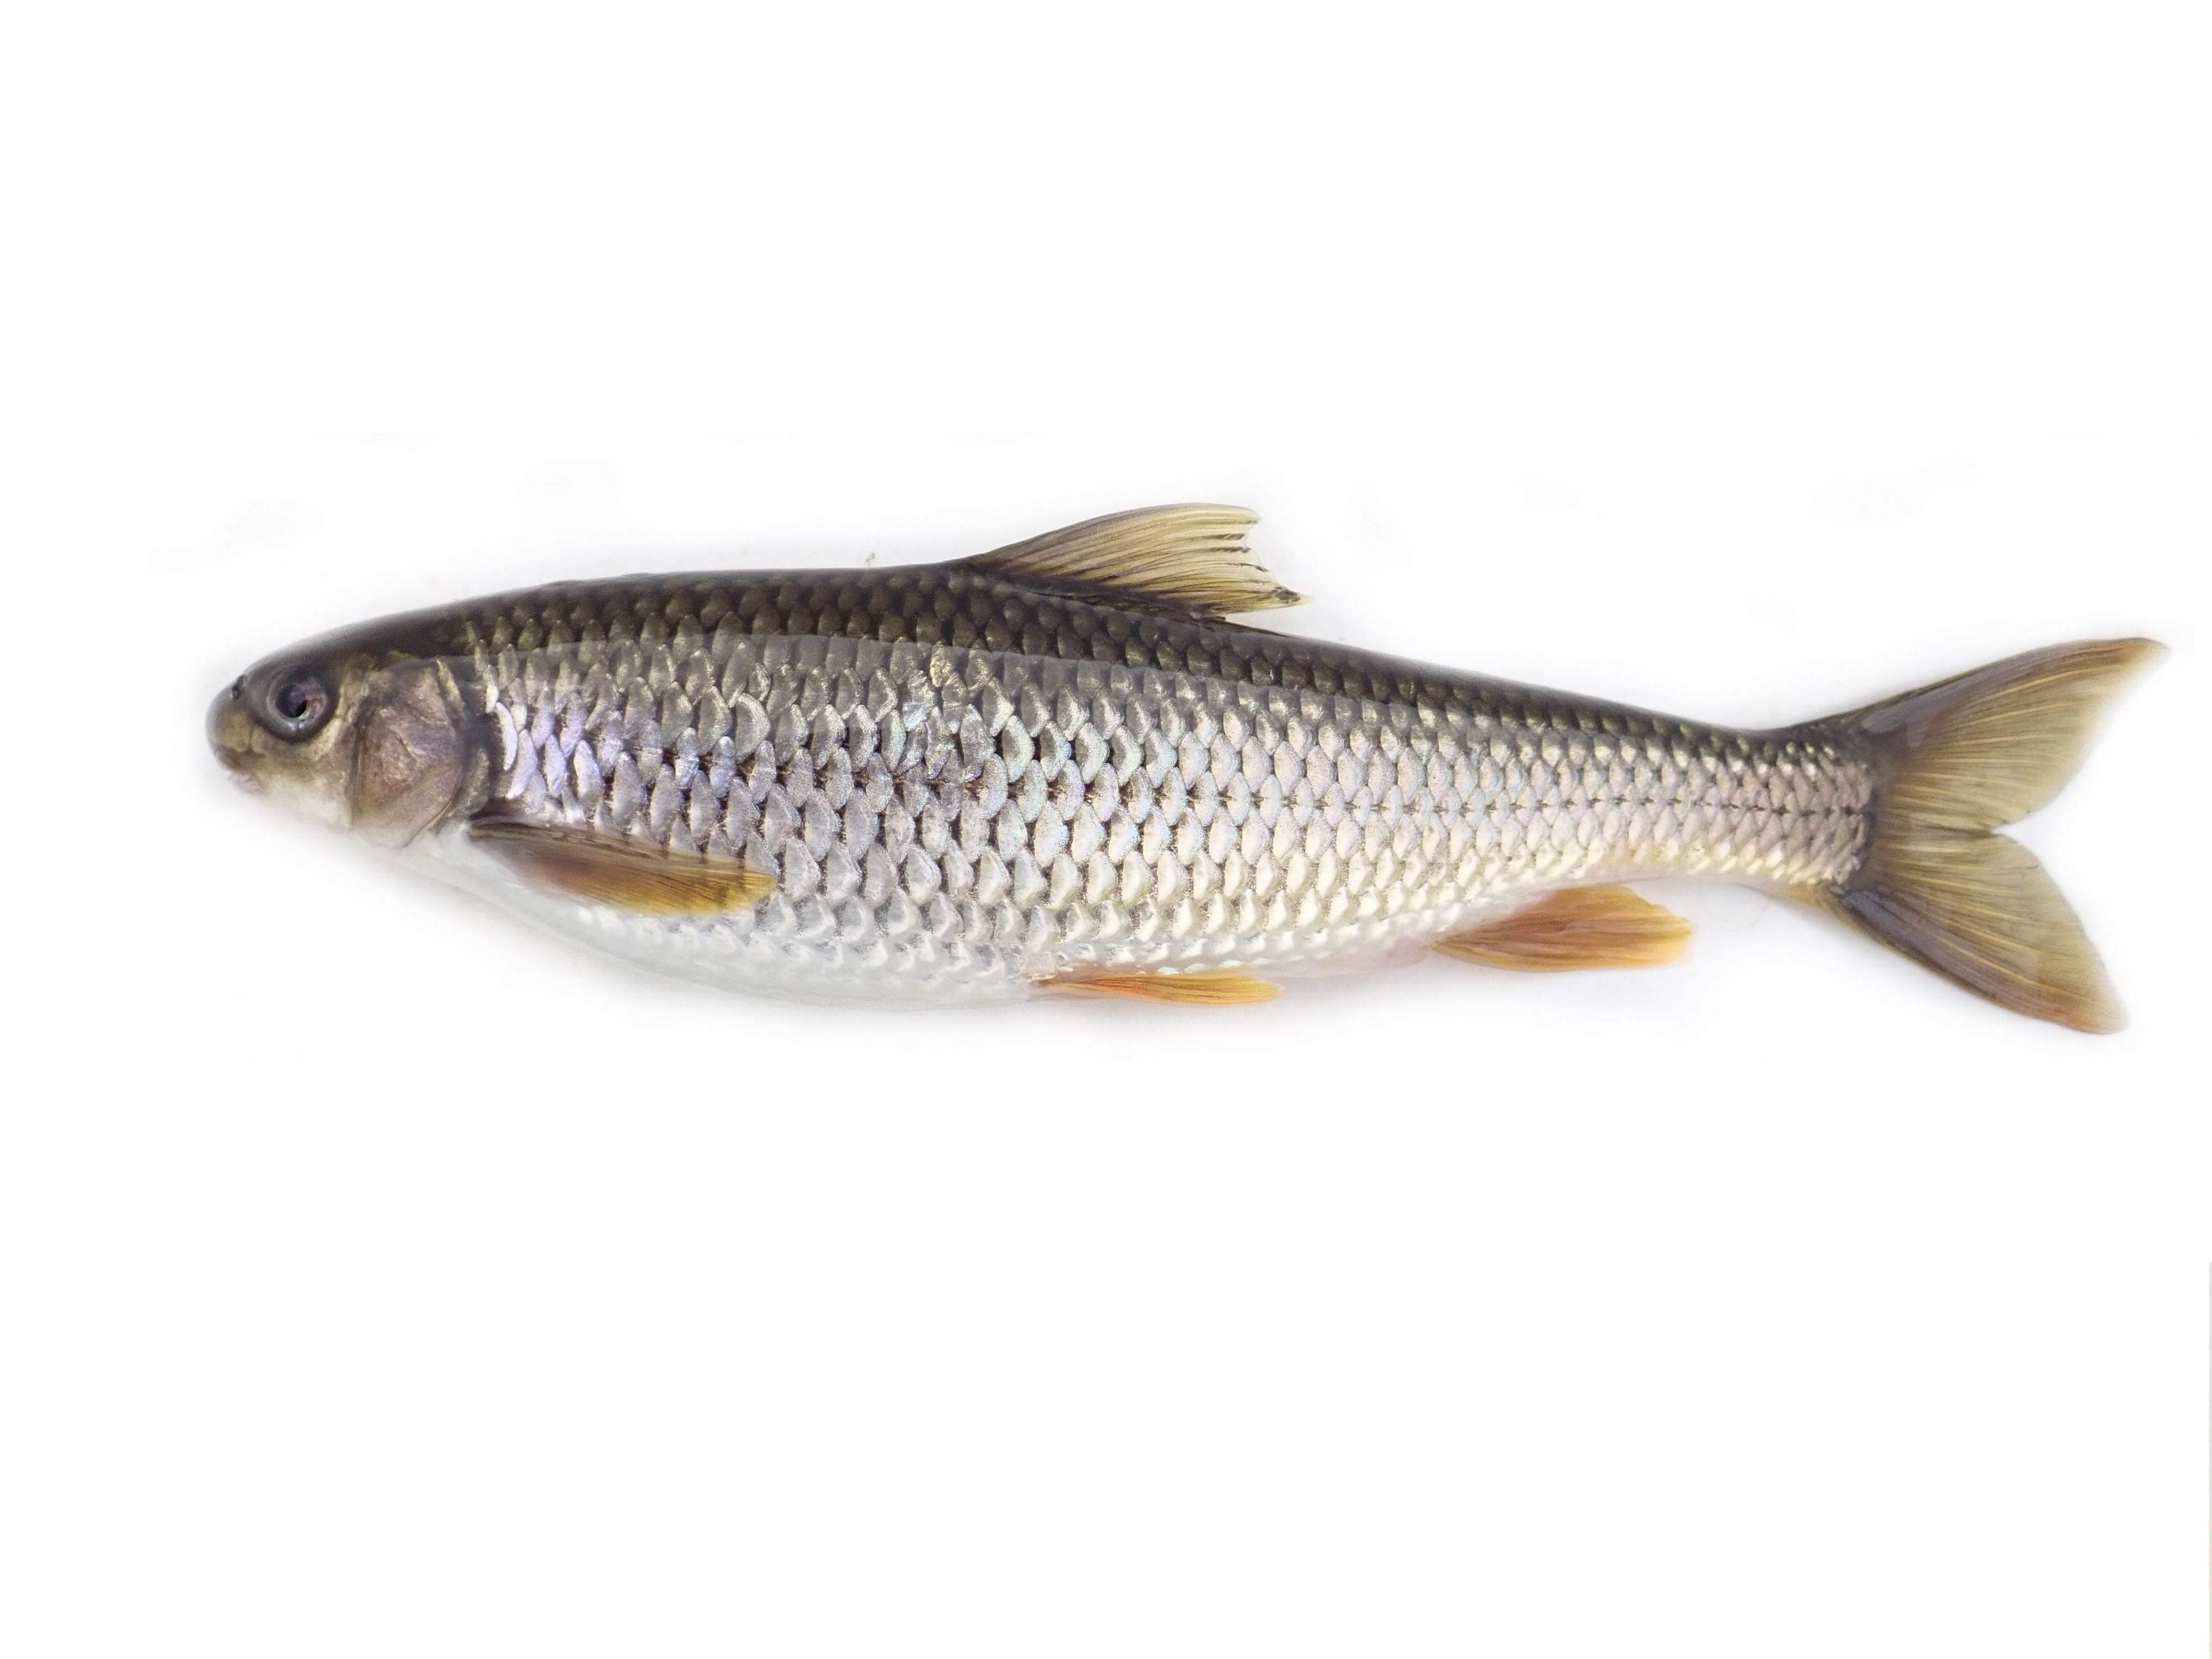 臺灣白甲魚(Onychostoma barbatulum)